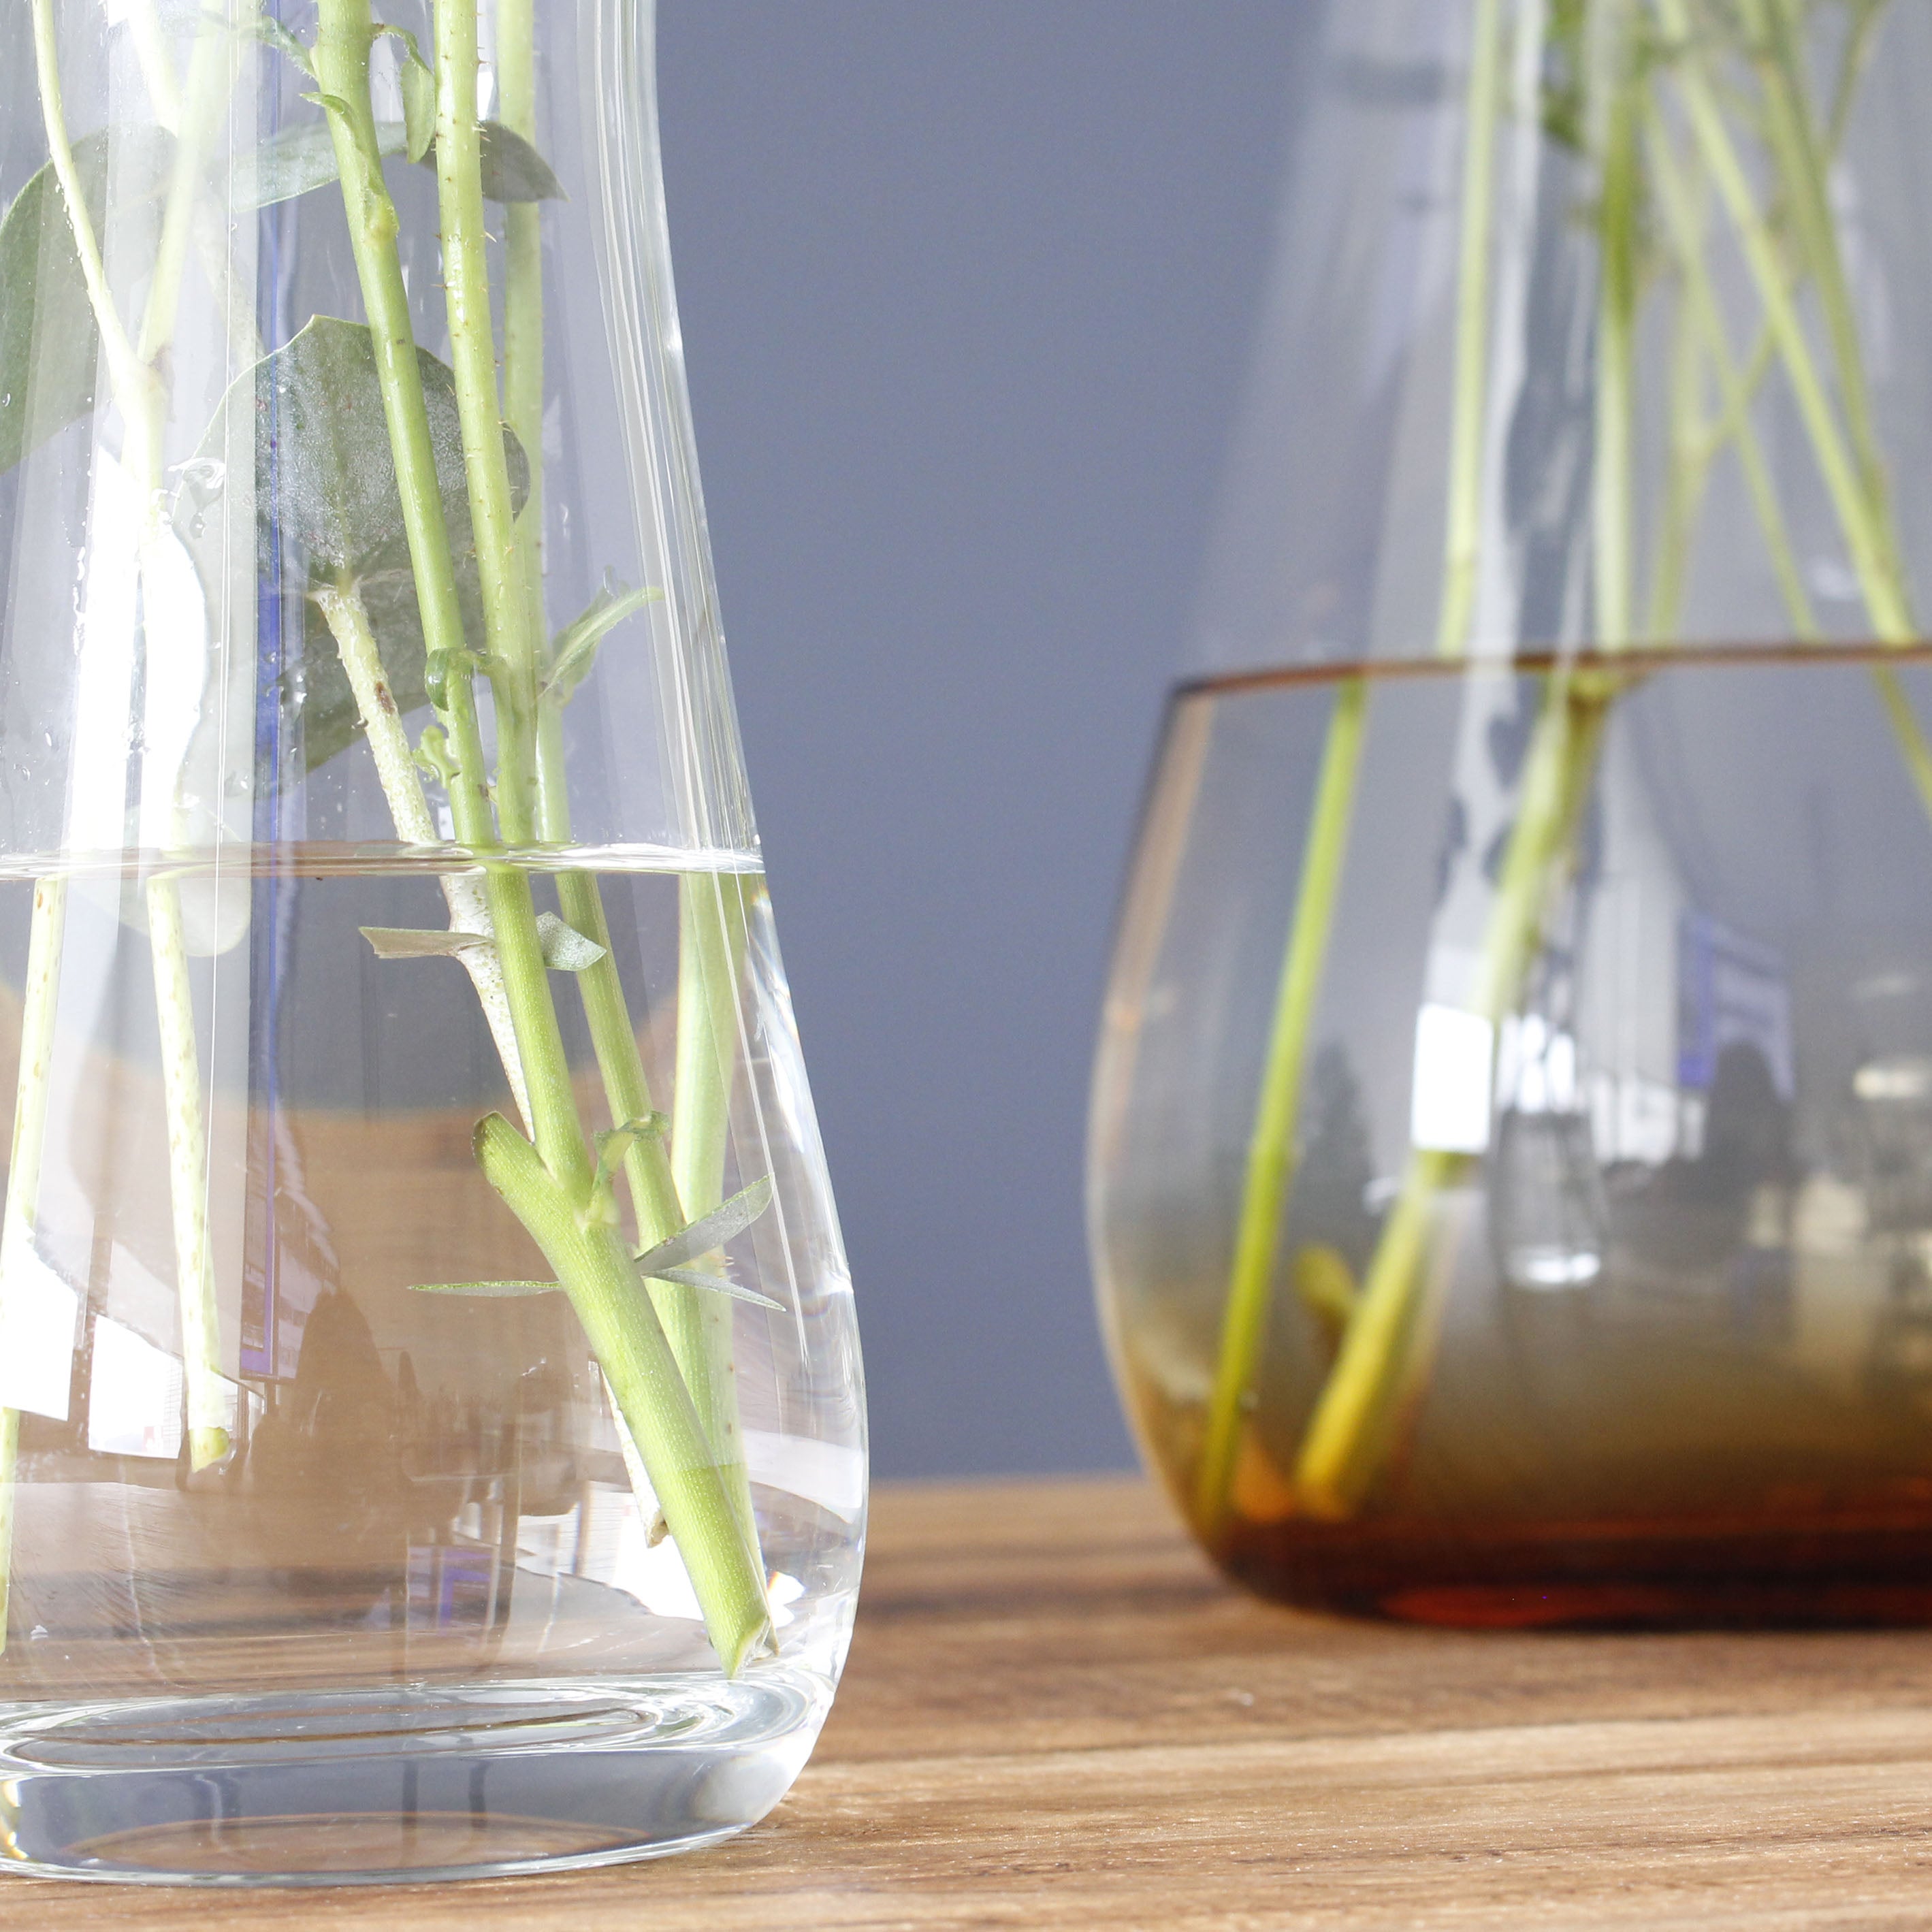 シンプルで機能的な、透明・茶色のグラデーションカラーが魅力のガラスの花瓶【mazzo - マッツォ】トールタイプ